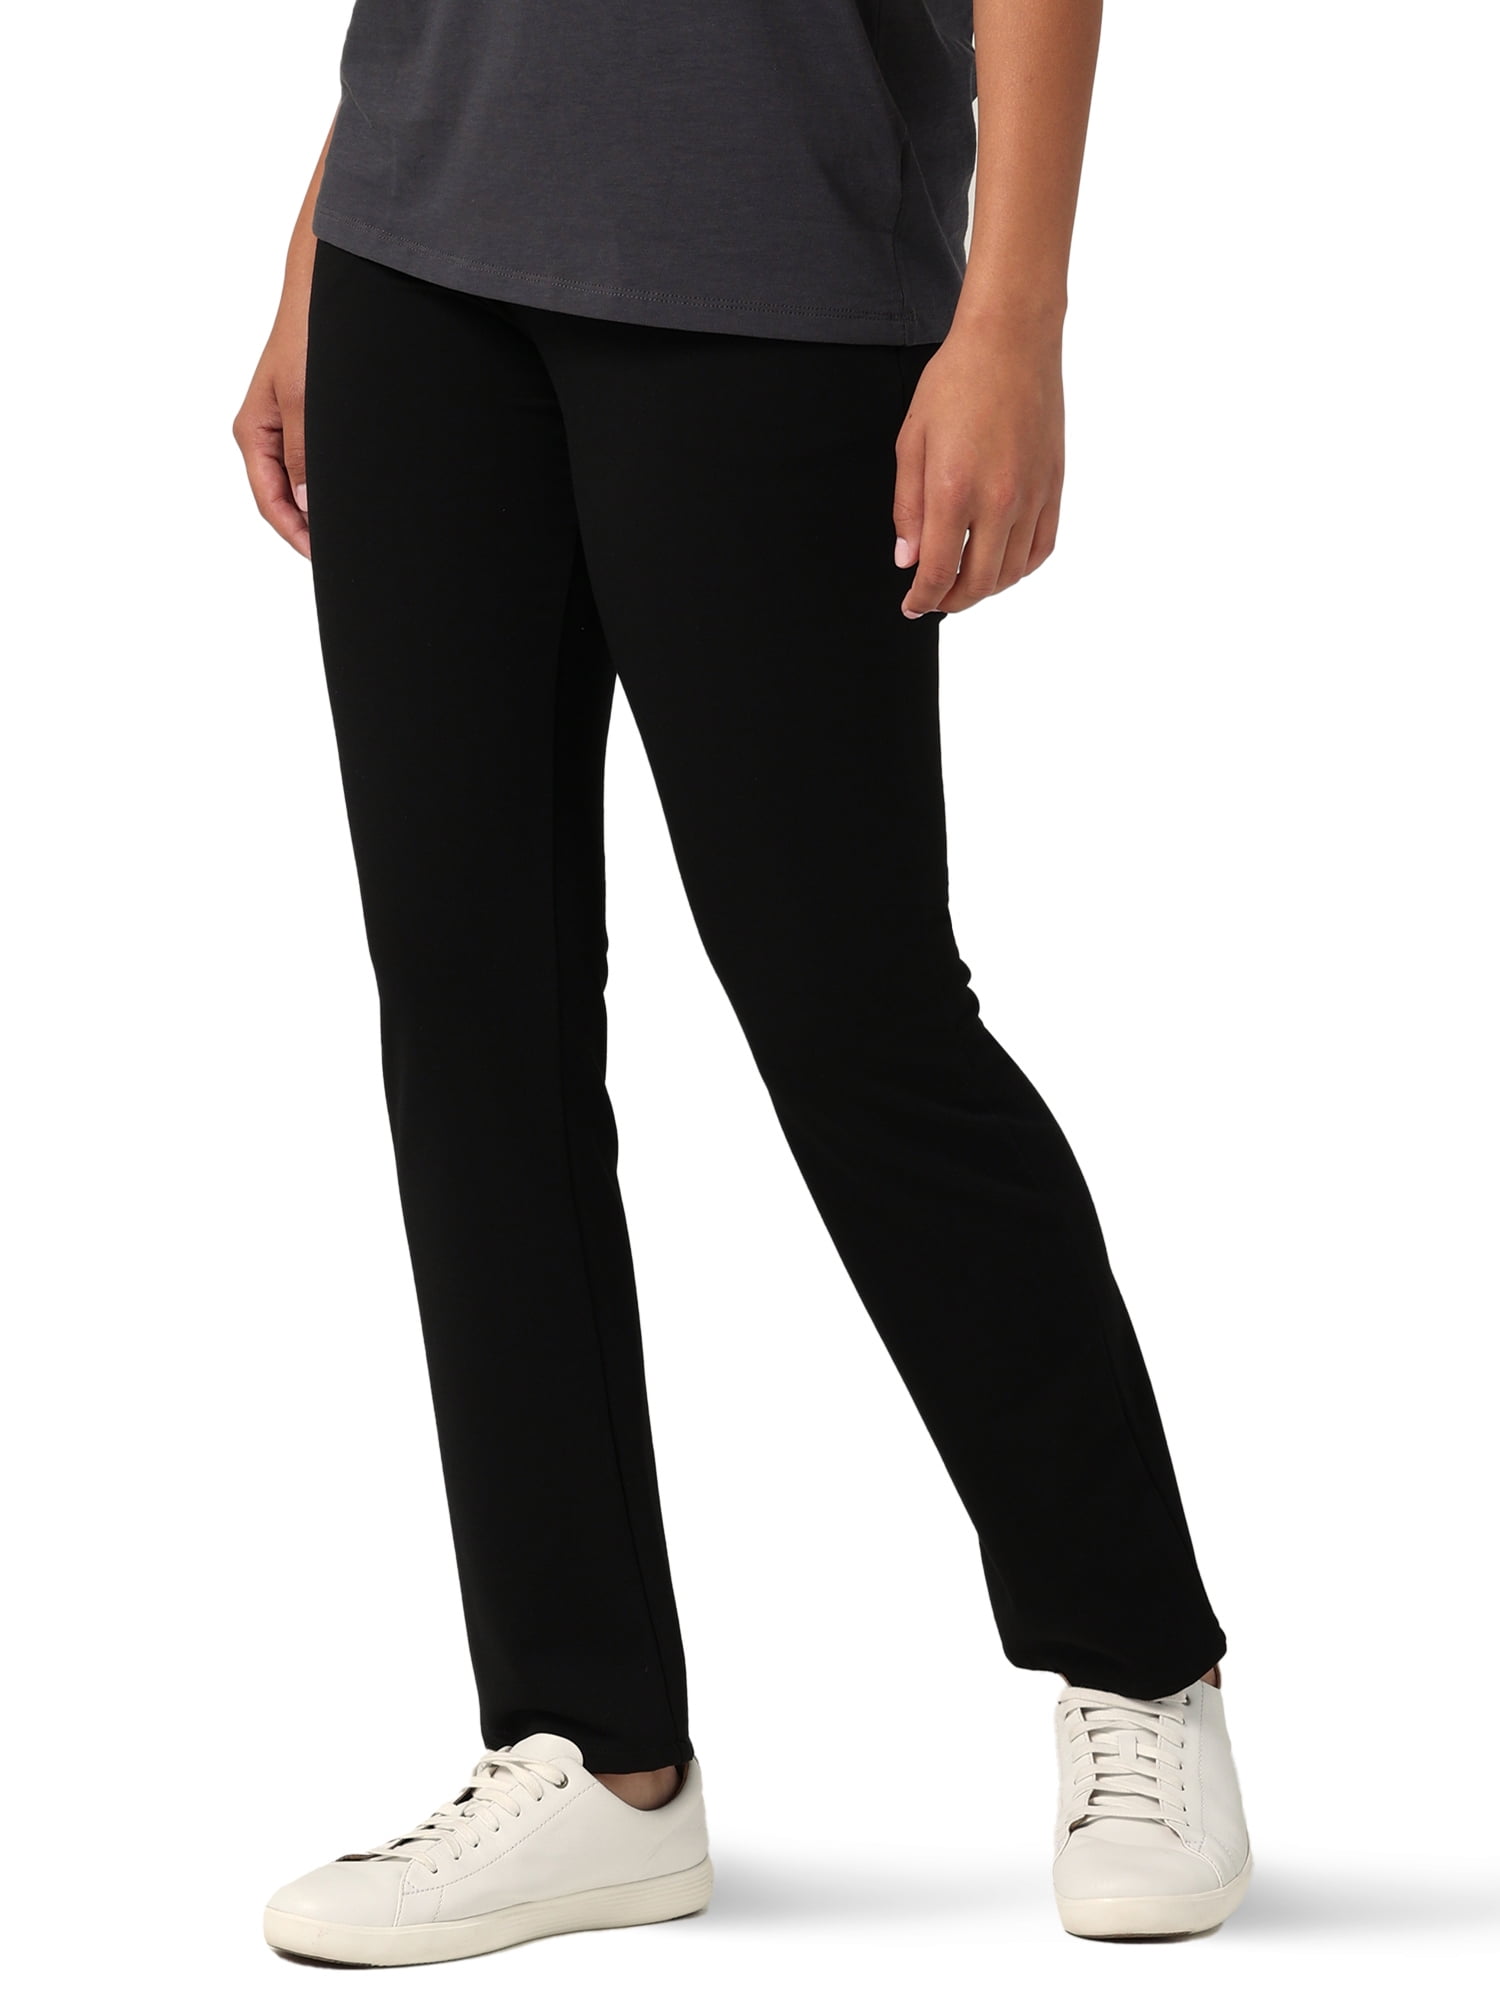 Black/Grey Plaid, 22M Visiter la boutique LeeWomen's Soft Comfort Waist Knit Midrise Straight Leg Pant 